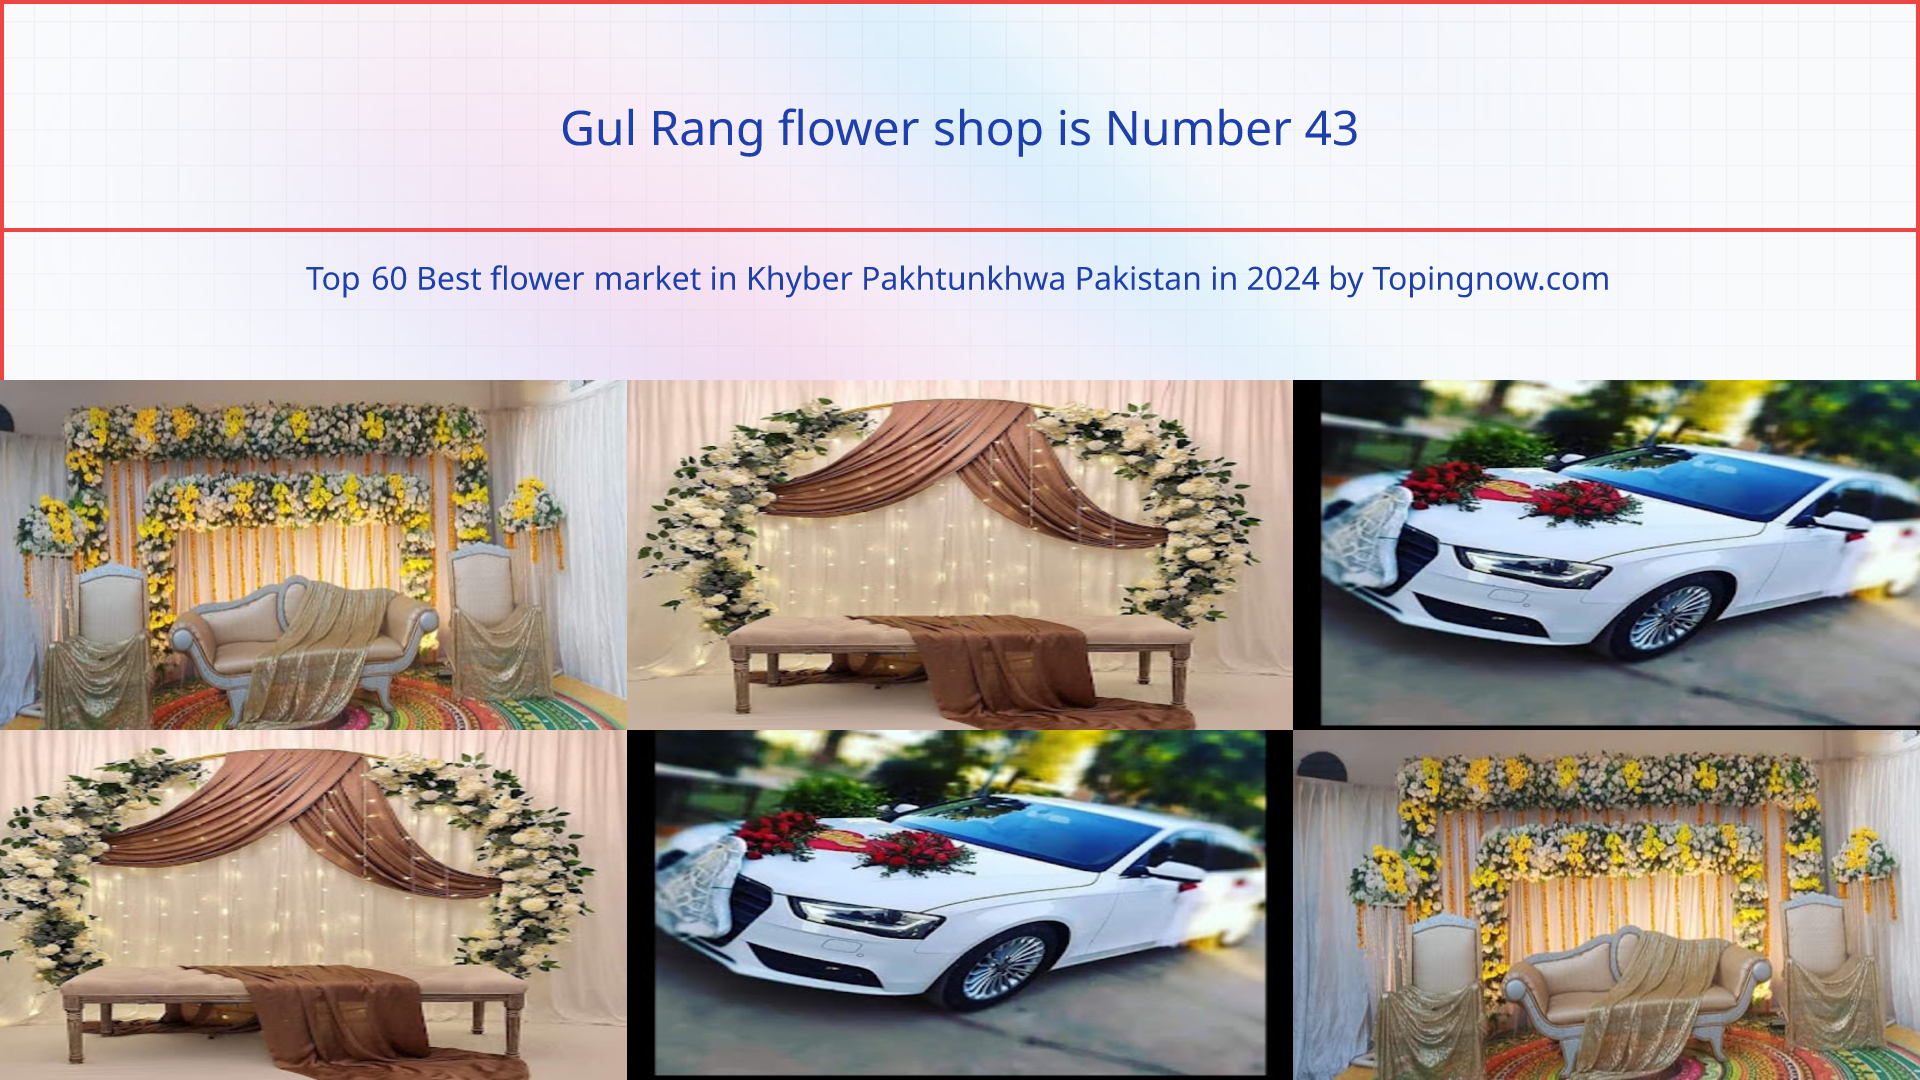 Gul Rang flower shop: Top 60 Best flower market in Khyber Pakhtunkhwa Pakistan in 2024